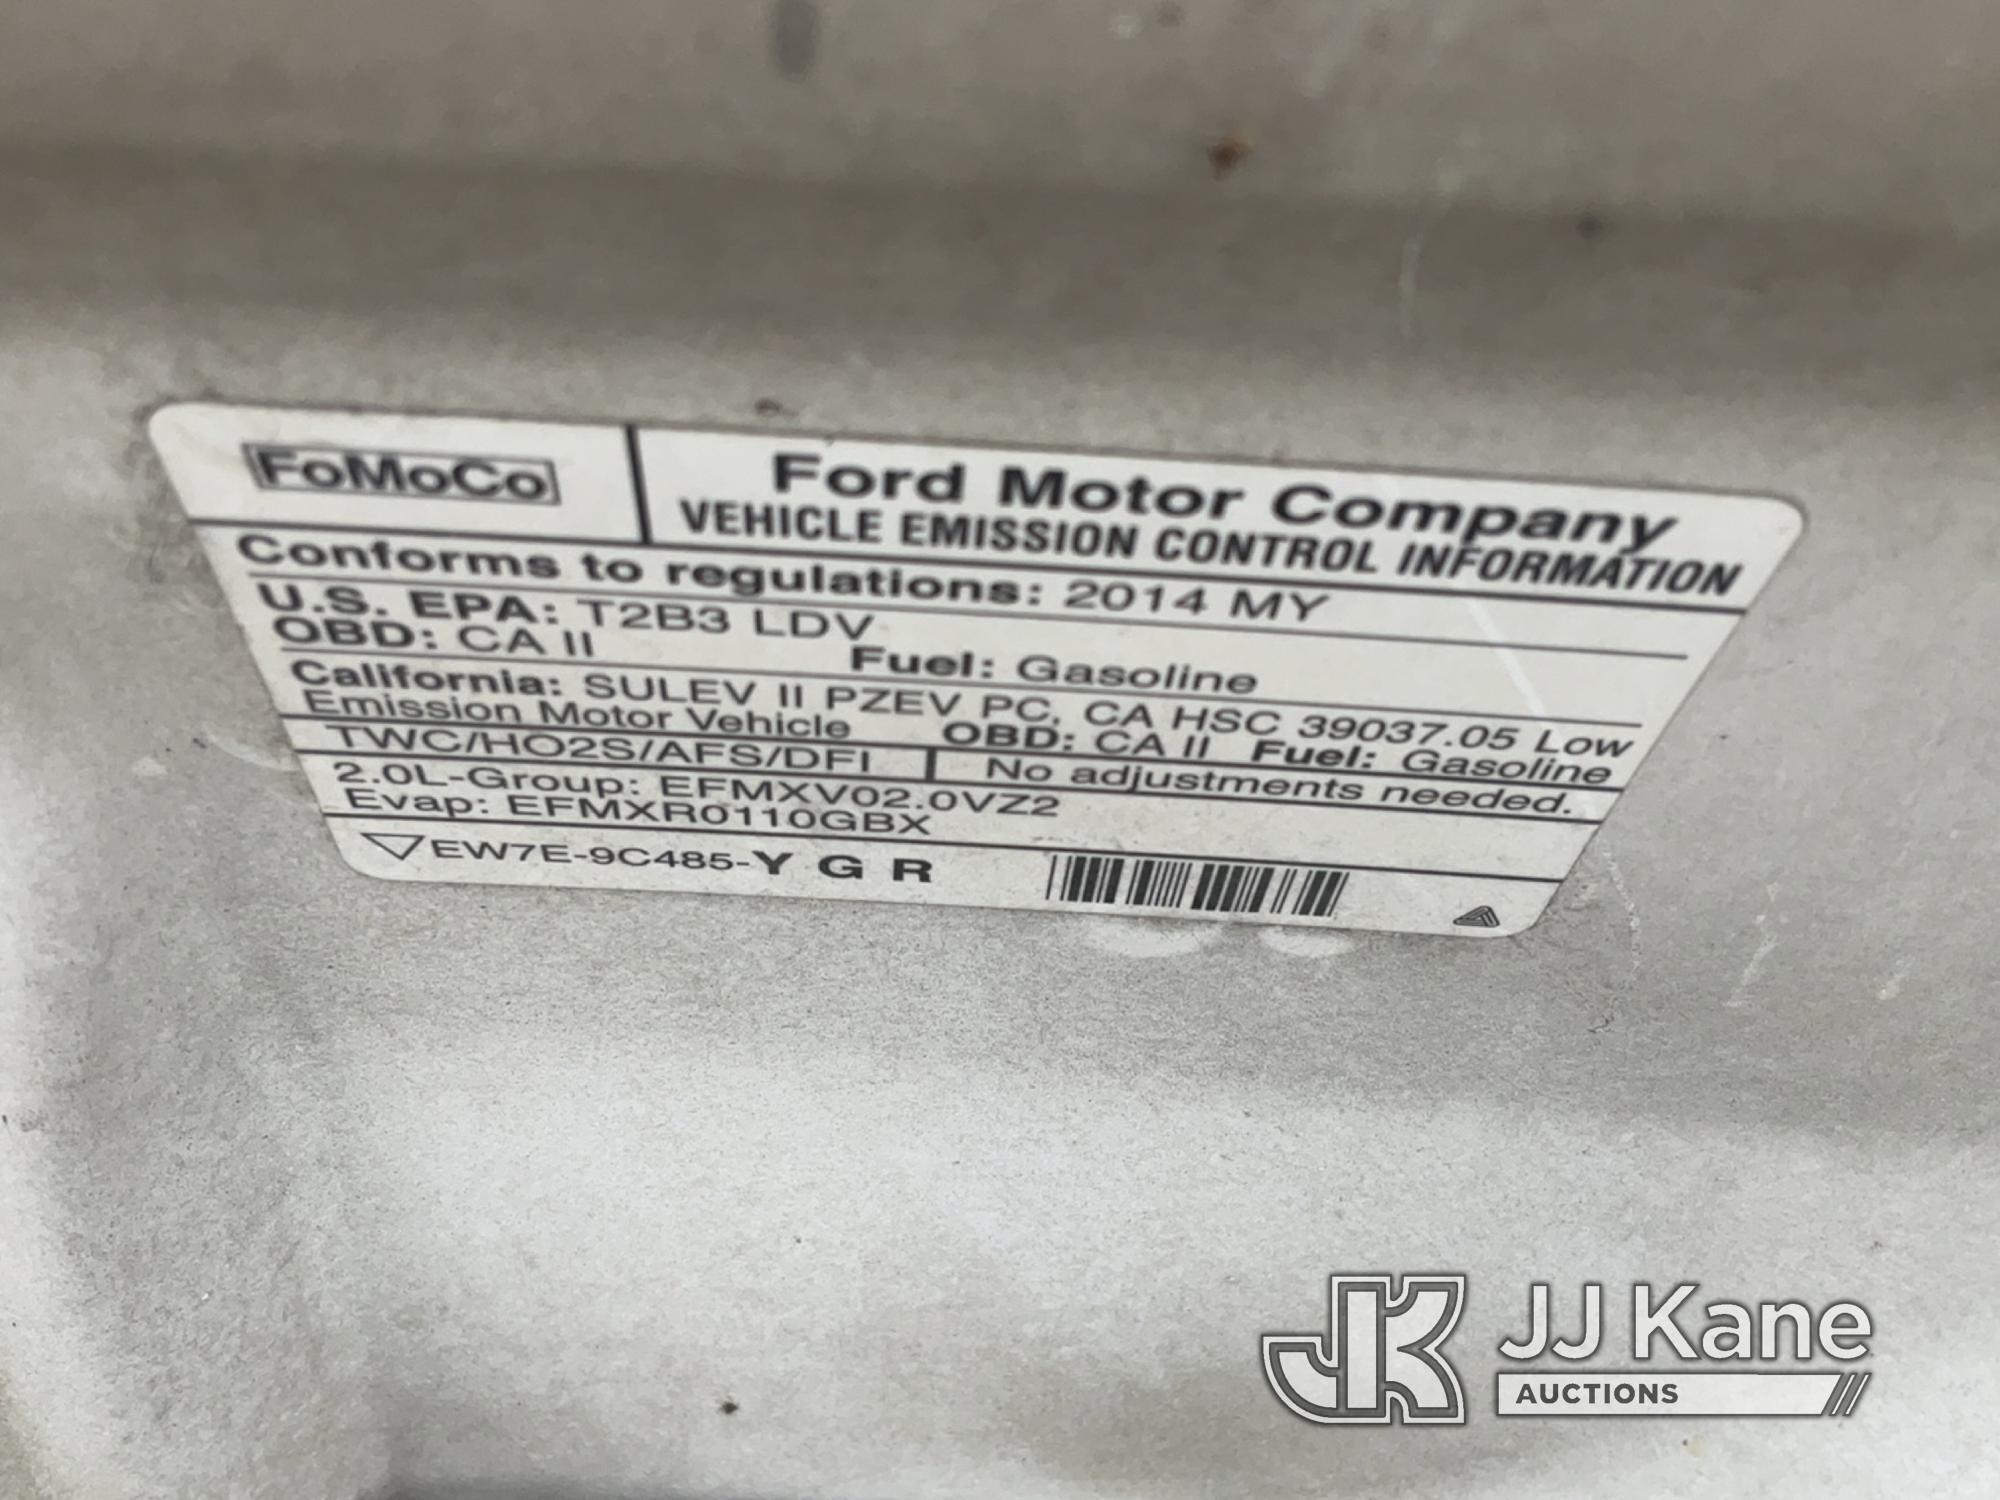 (Jurupa Valley, CA) 2014 Ford Focus 4-Door Sedan Runs But Does Not Move, Bad Front Suspension, Must